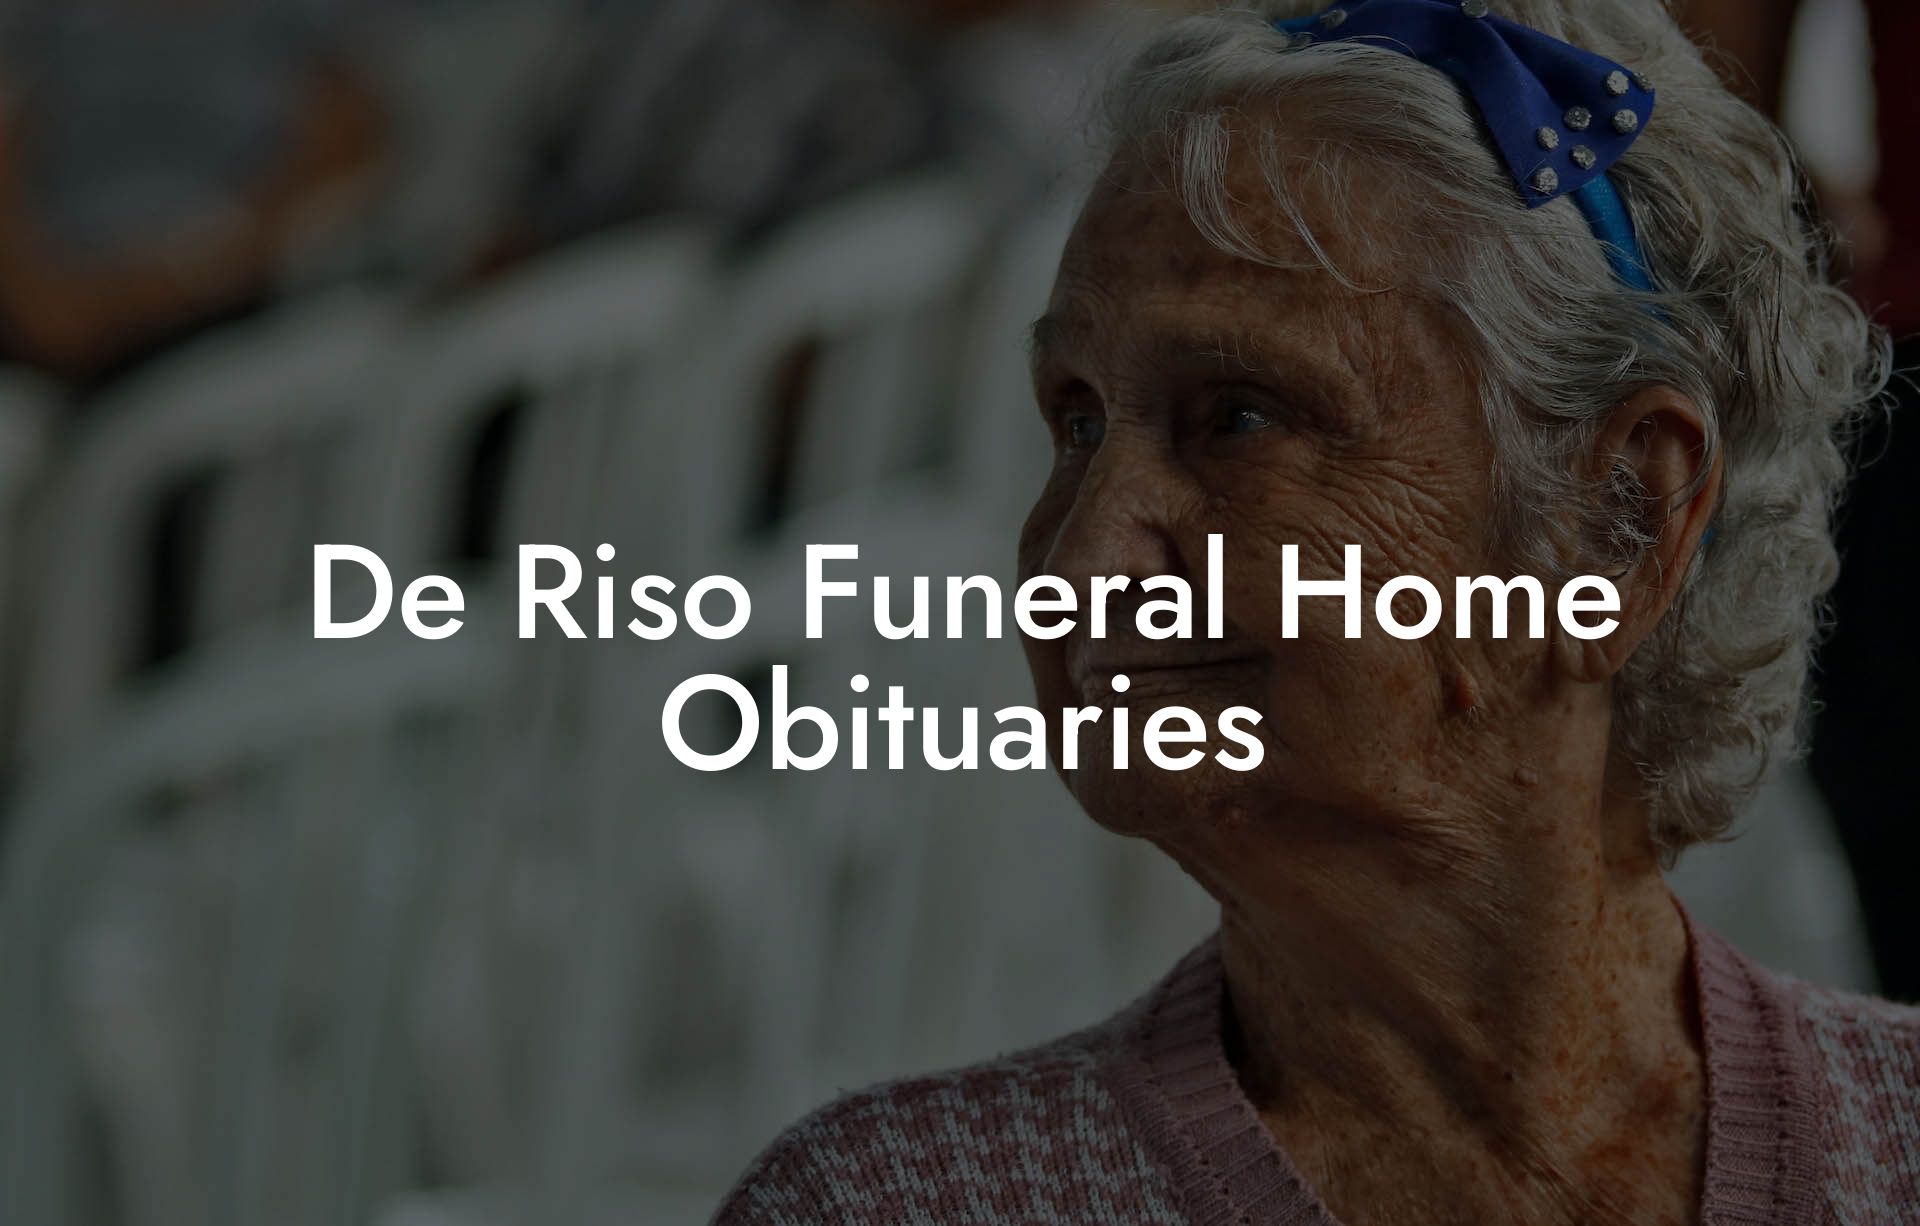 De Riso Funeral Home Obituaries